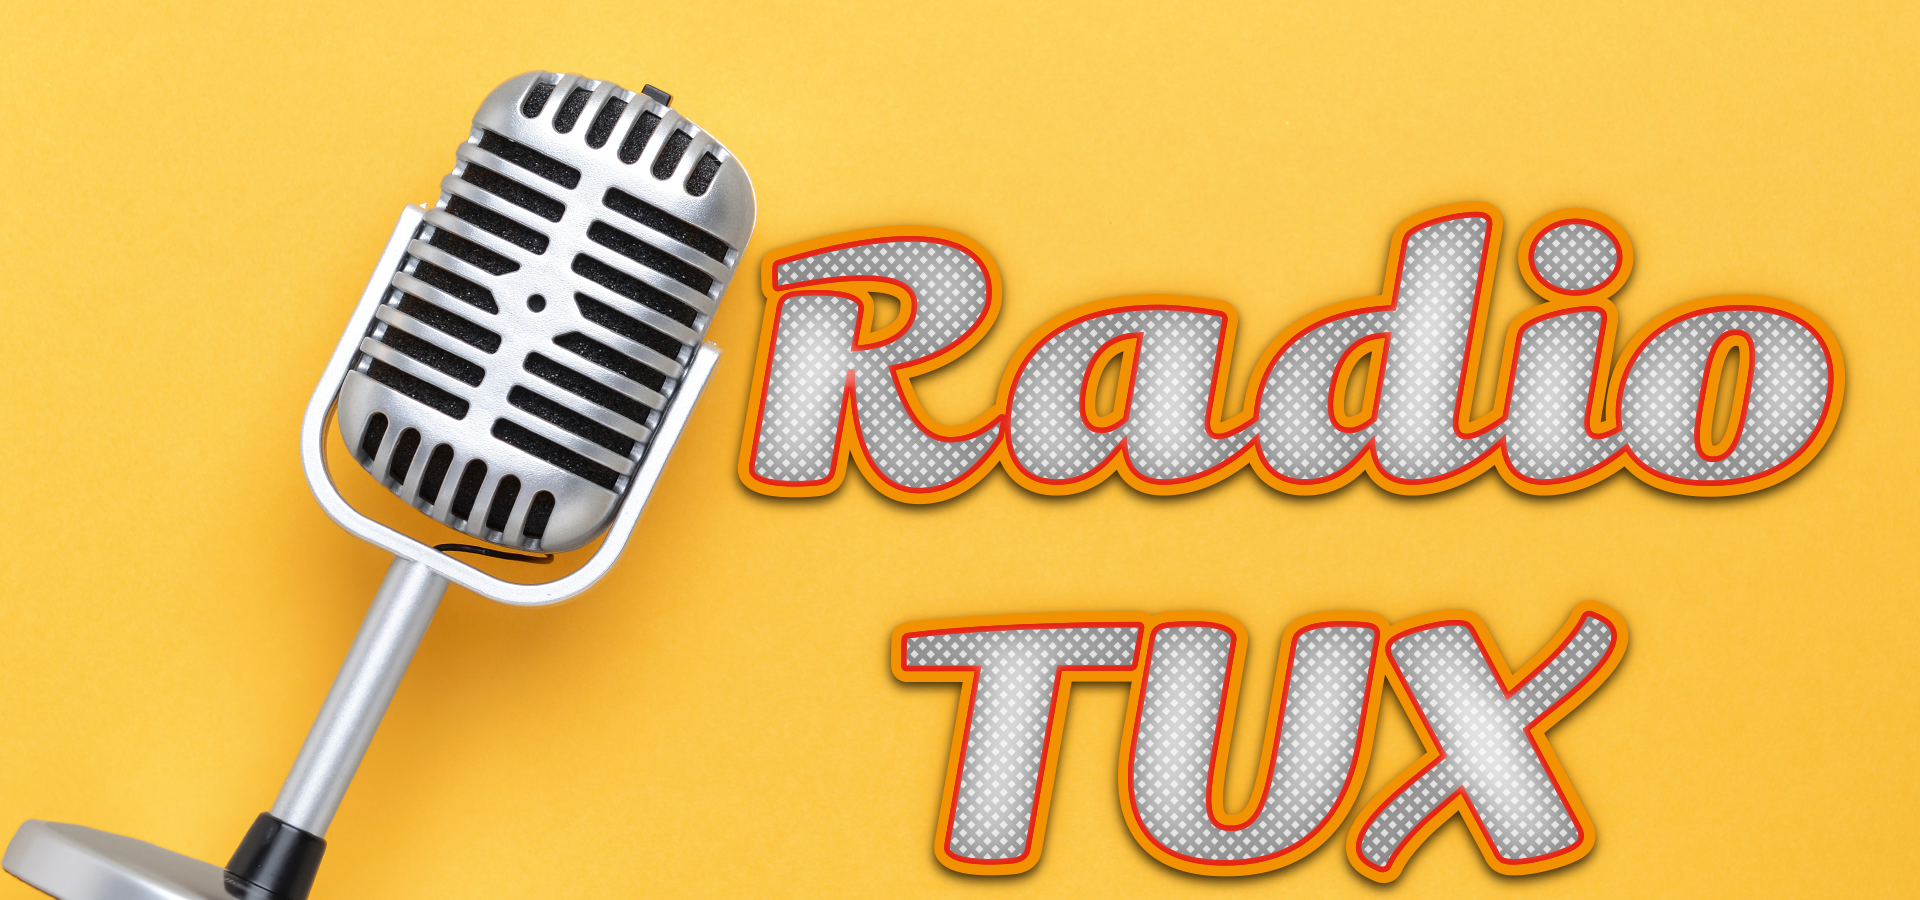 Promobeeld concert Radio TUX van De Xaverianen